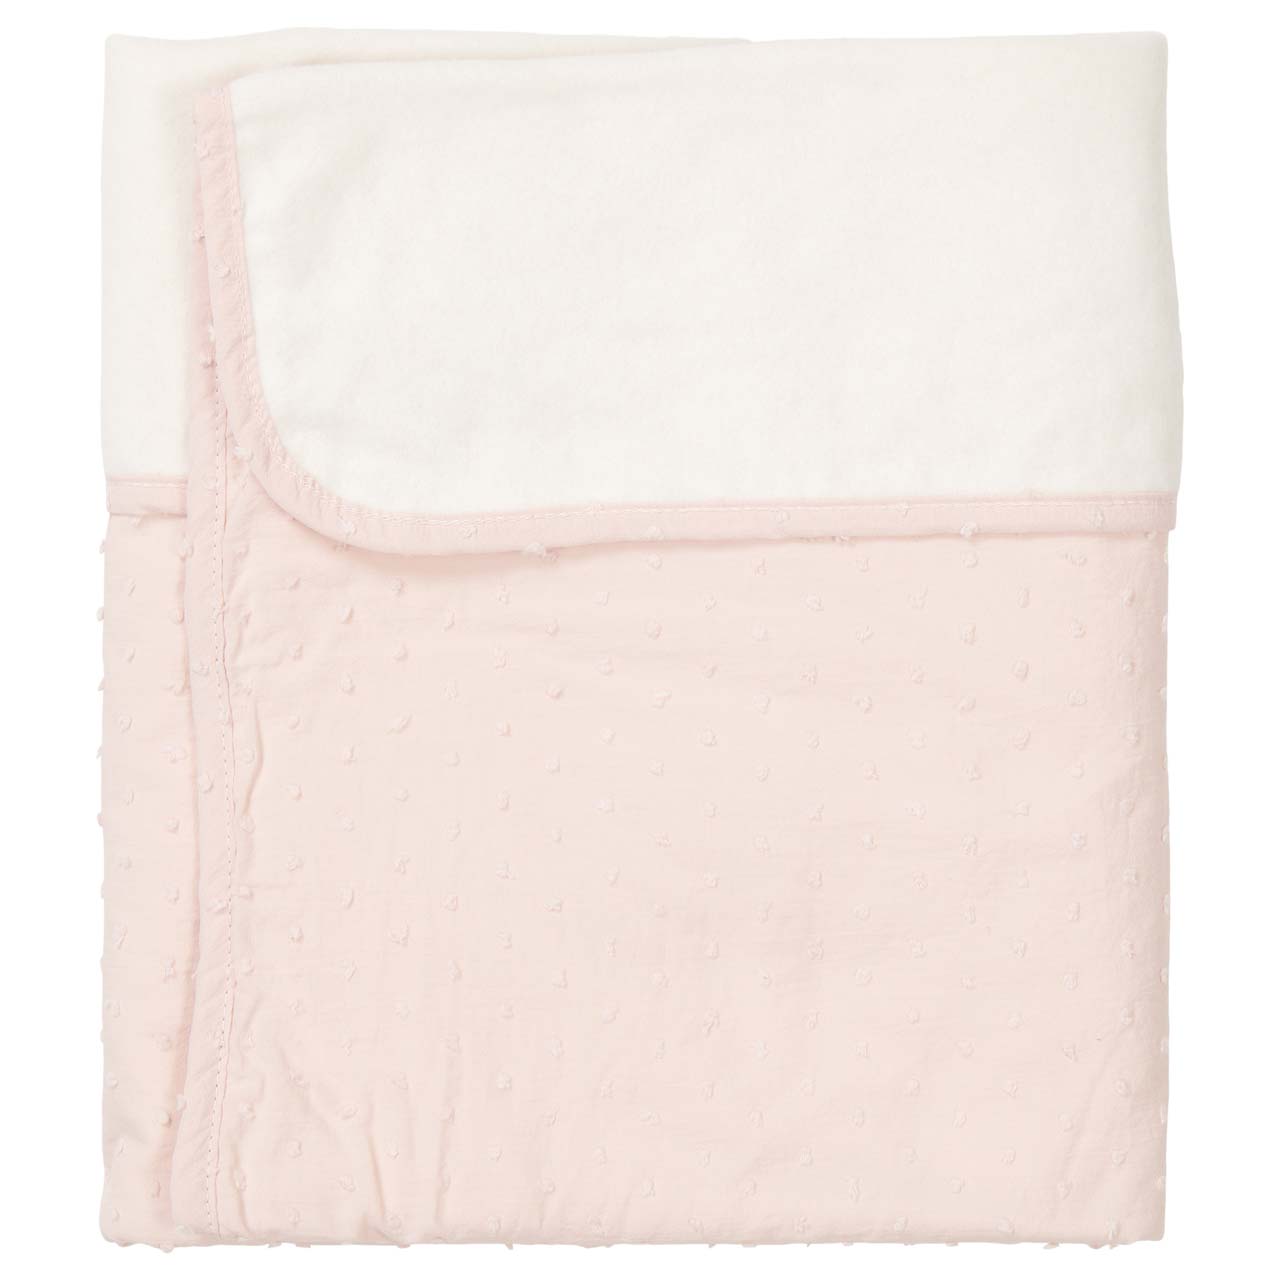 Cot blanket cotton fleece Napa blush